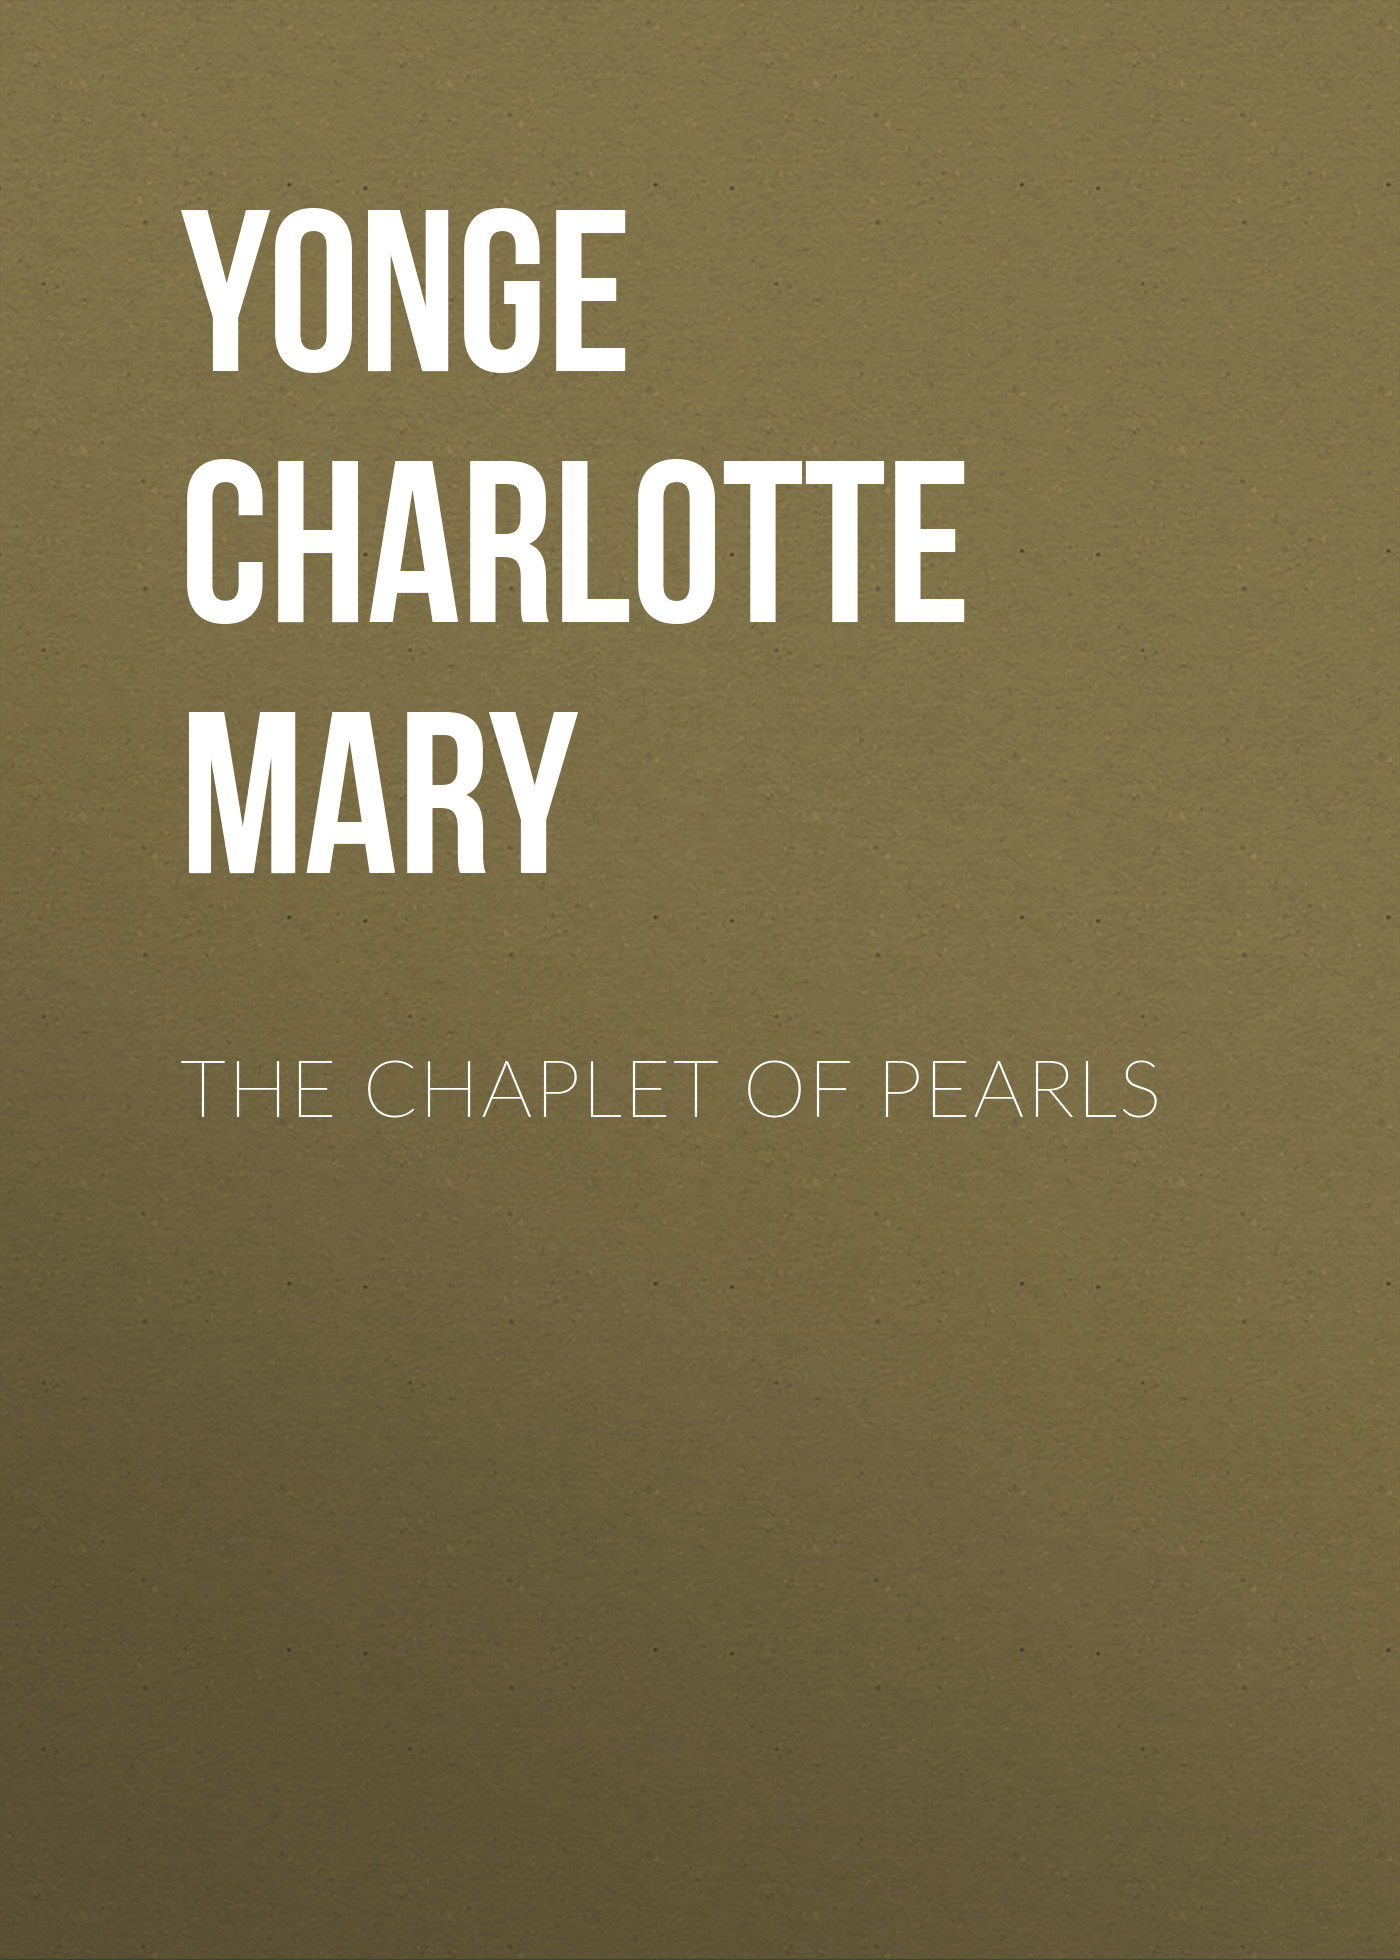 Книга The Chaplet of Pearls из серии , созданная Charlotte Yonge, может относится к жанру Зарубежная классика, Литература 19 века, Европейская старинная литература, Зарубежная старинная литература. Стоимость электронной книги The Chaplet of Pearls с идентификатором 36094581 составляет 0 руб.